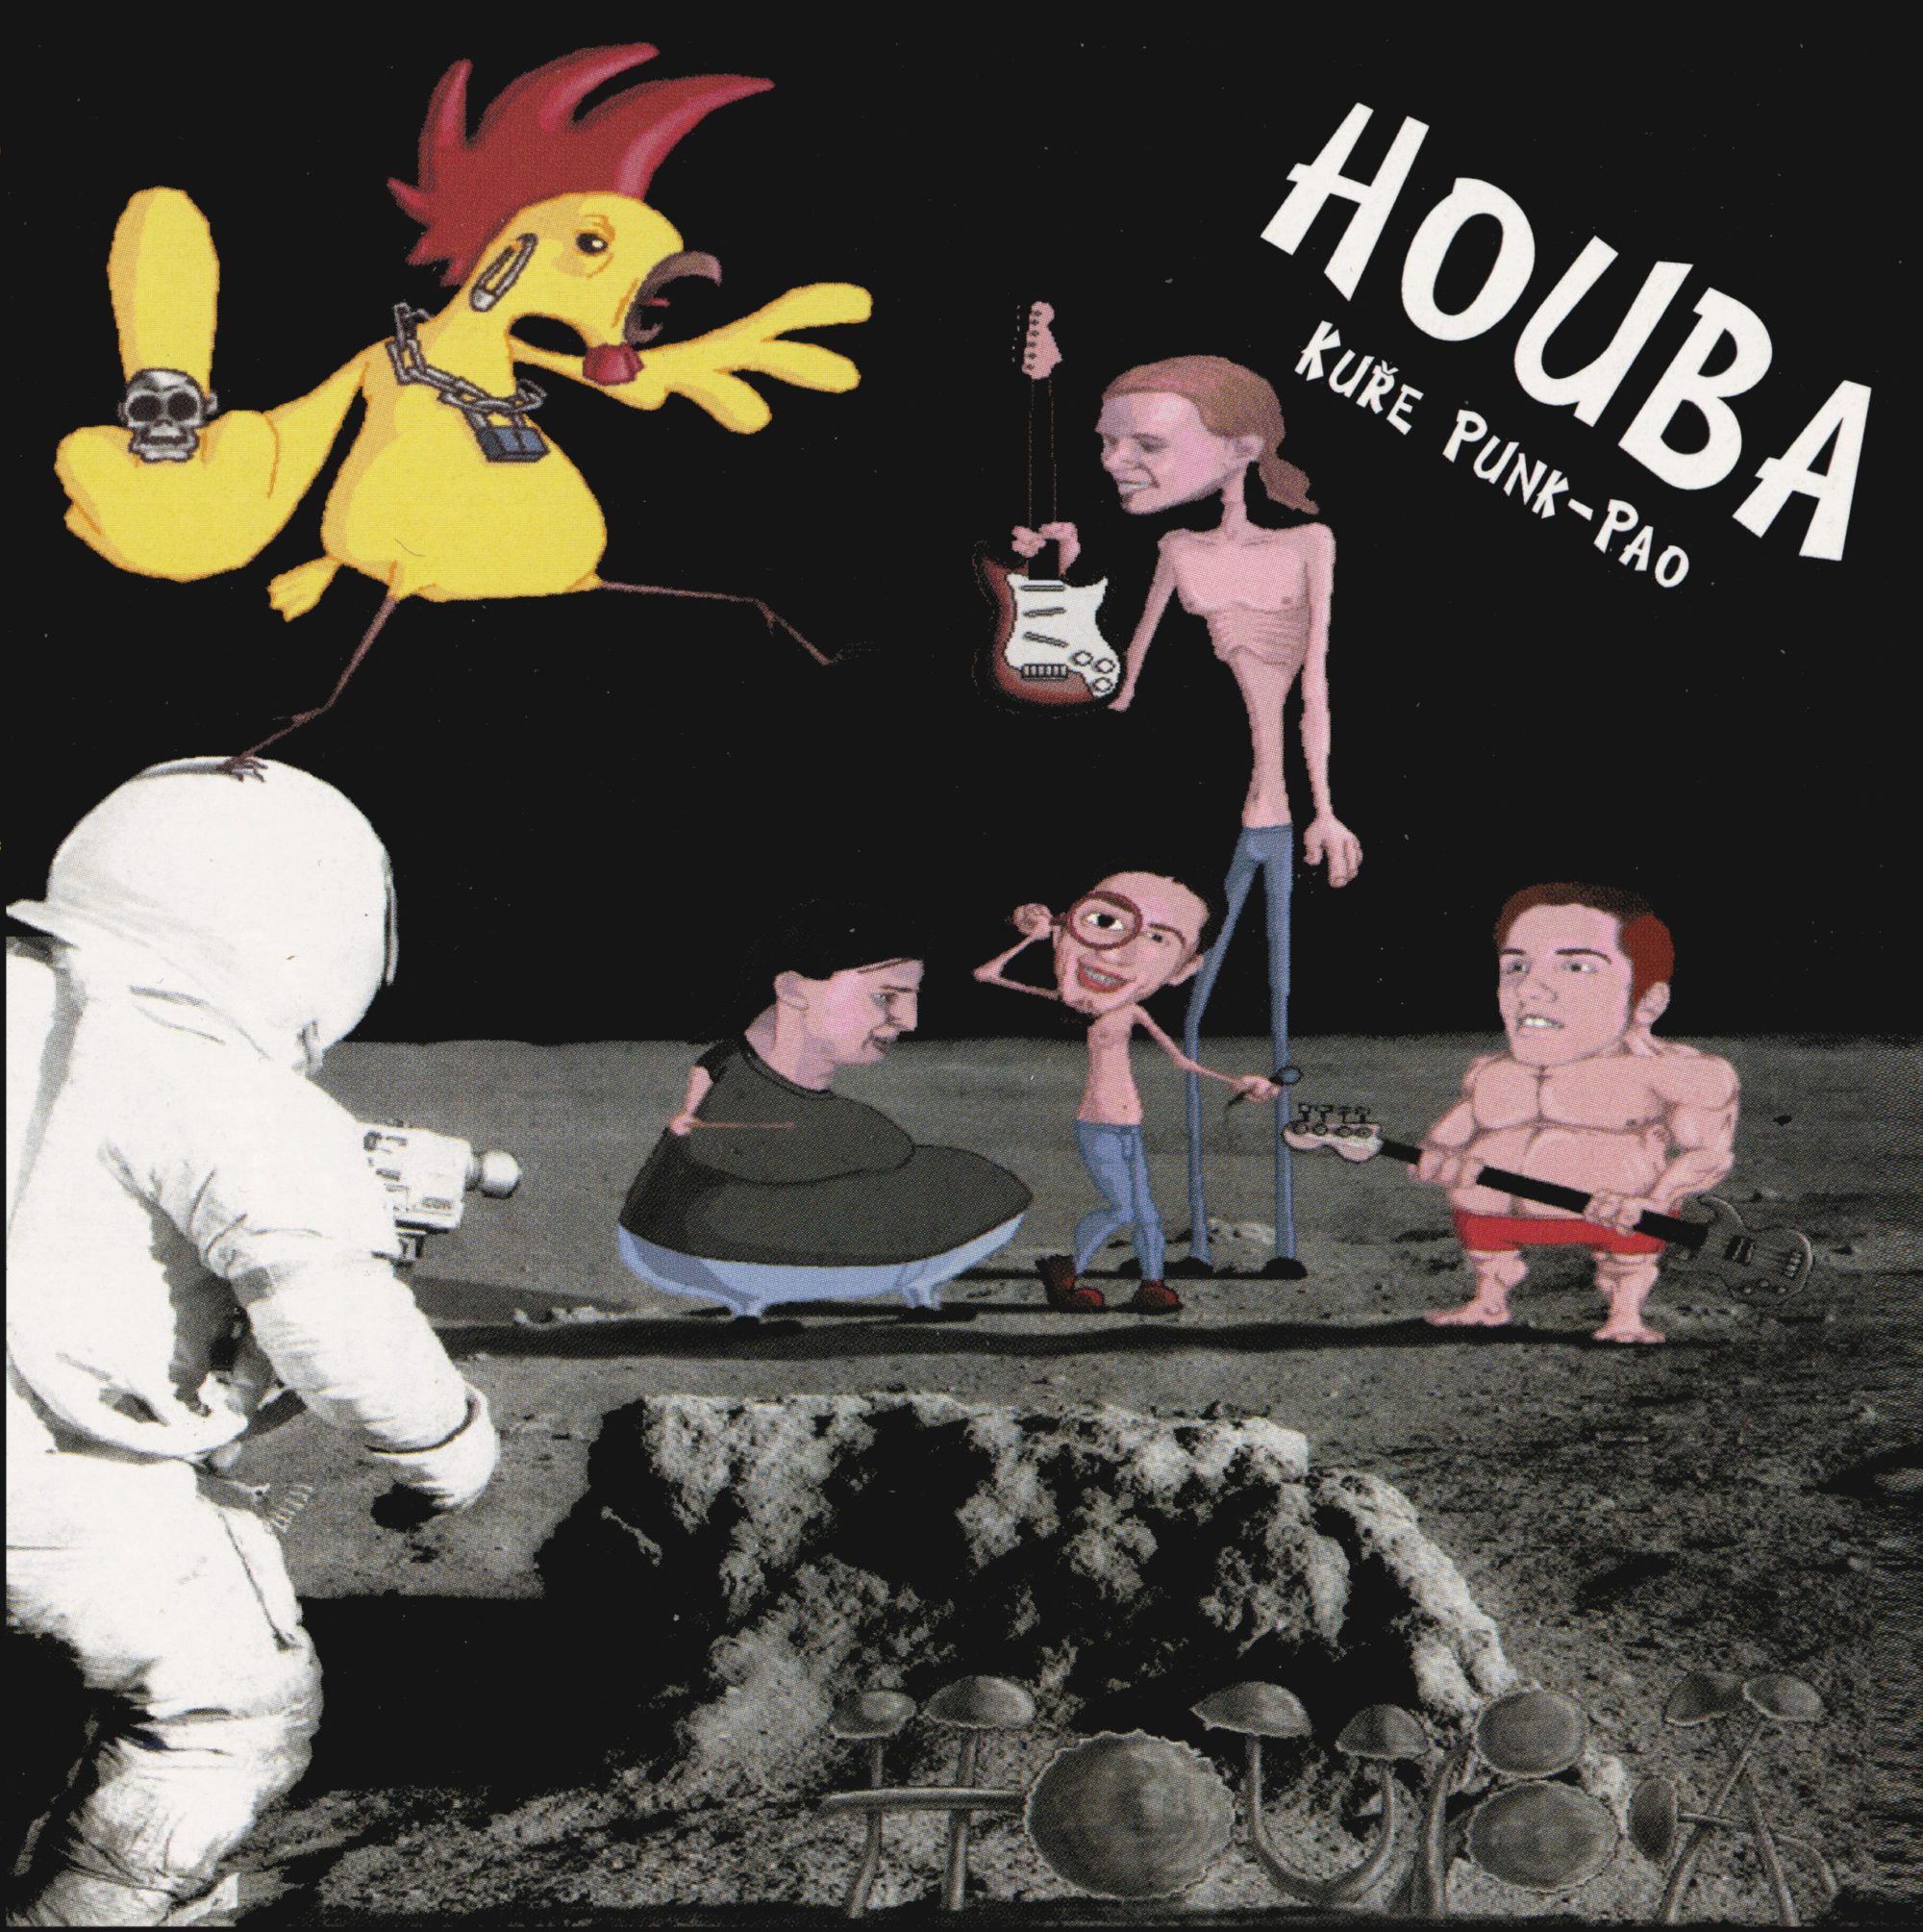 Houba – Kuře punk-pao